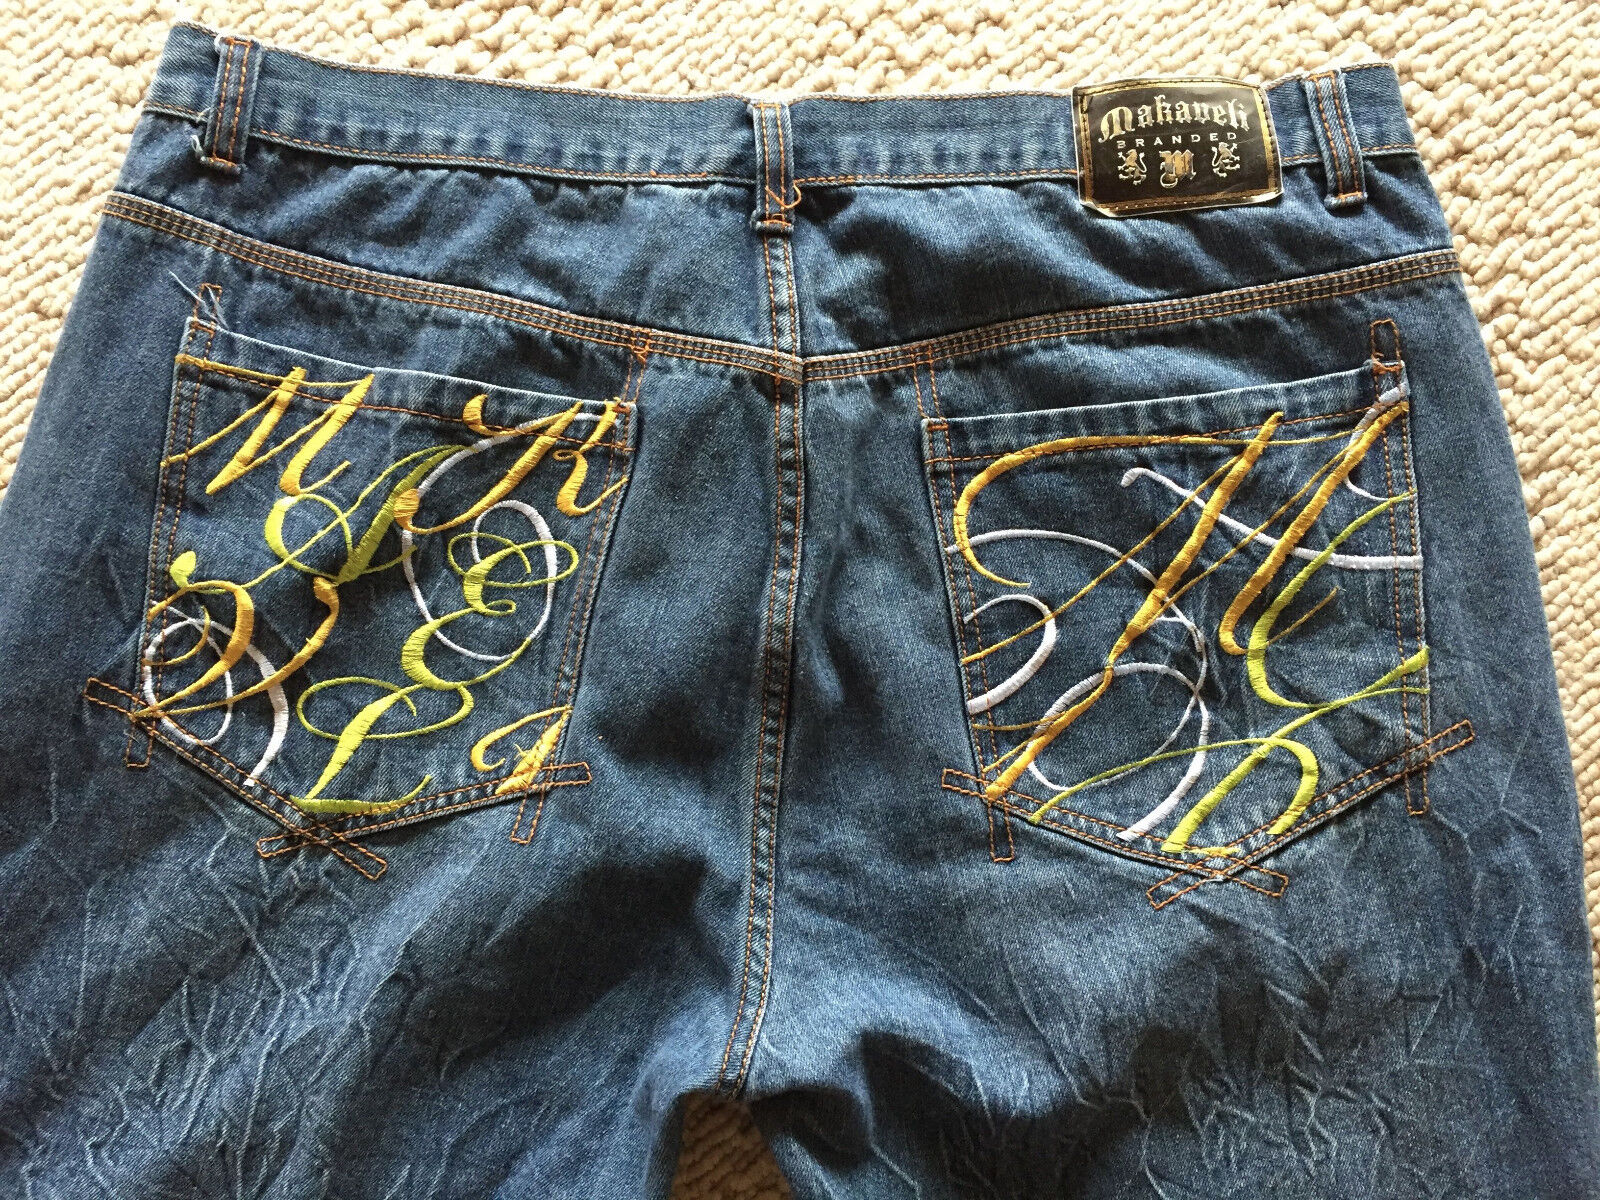 Makaveli Branded Designer Jeans Scrolled Logo Embroidery Back Pockets 42x32